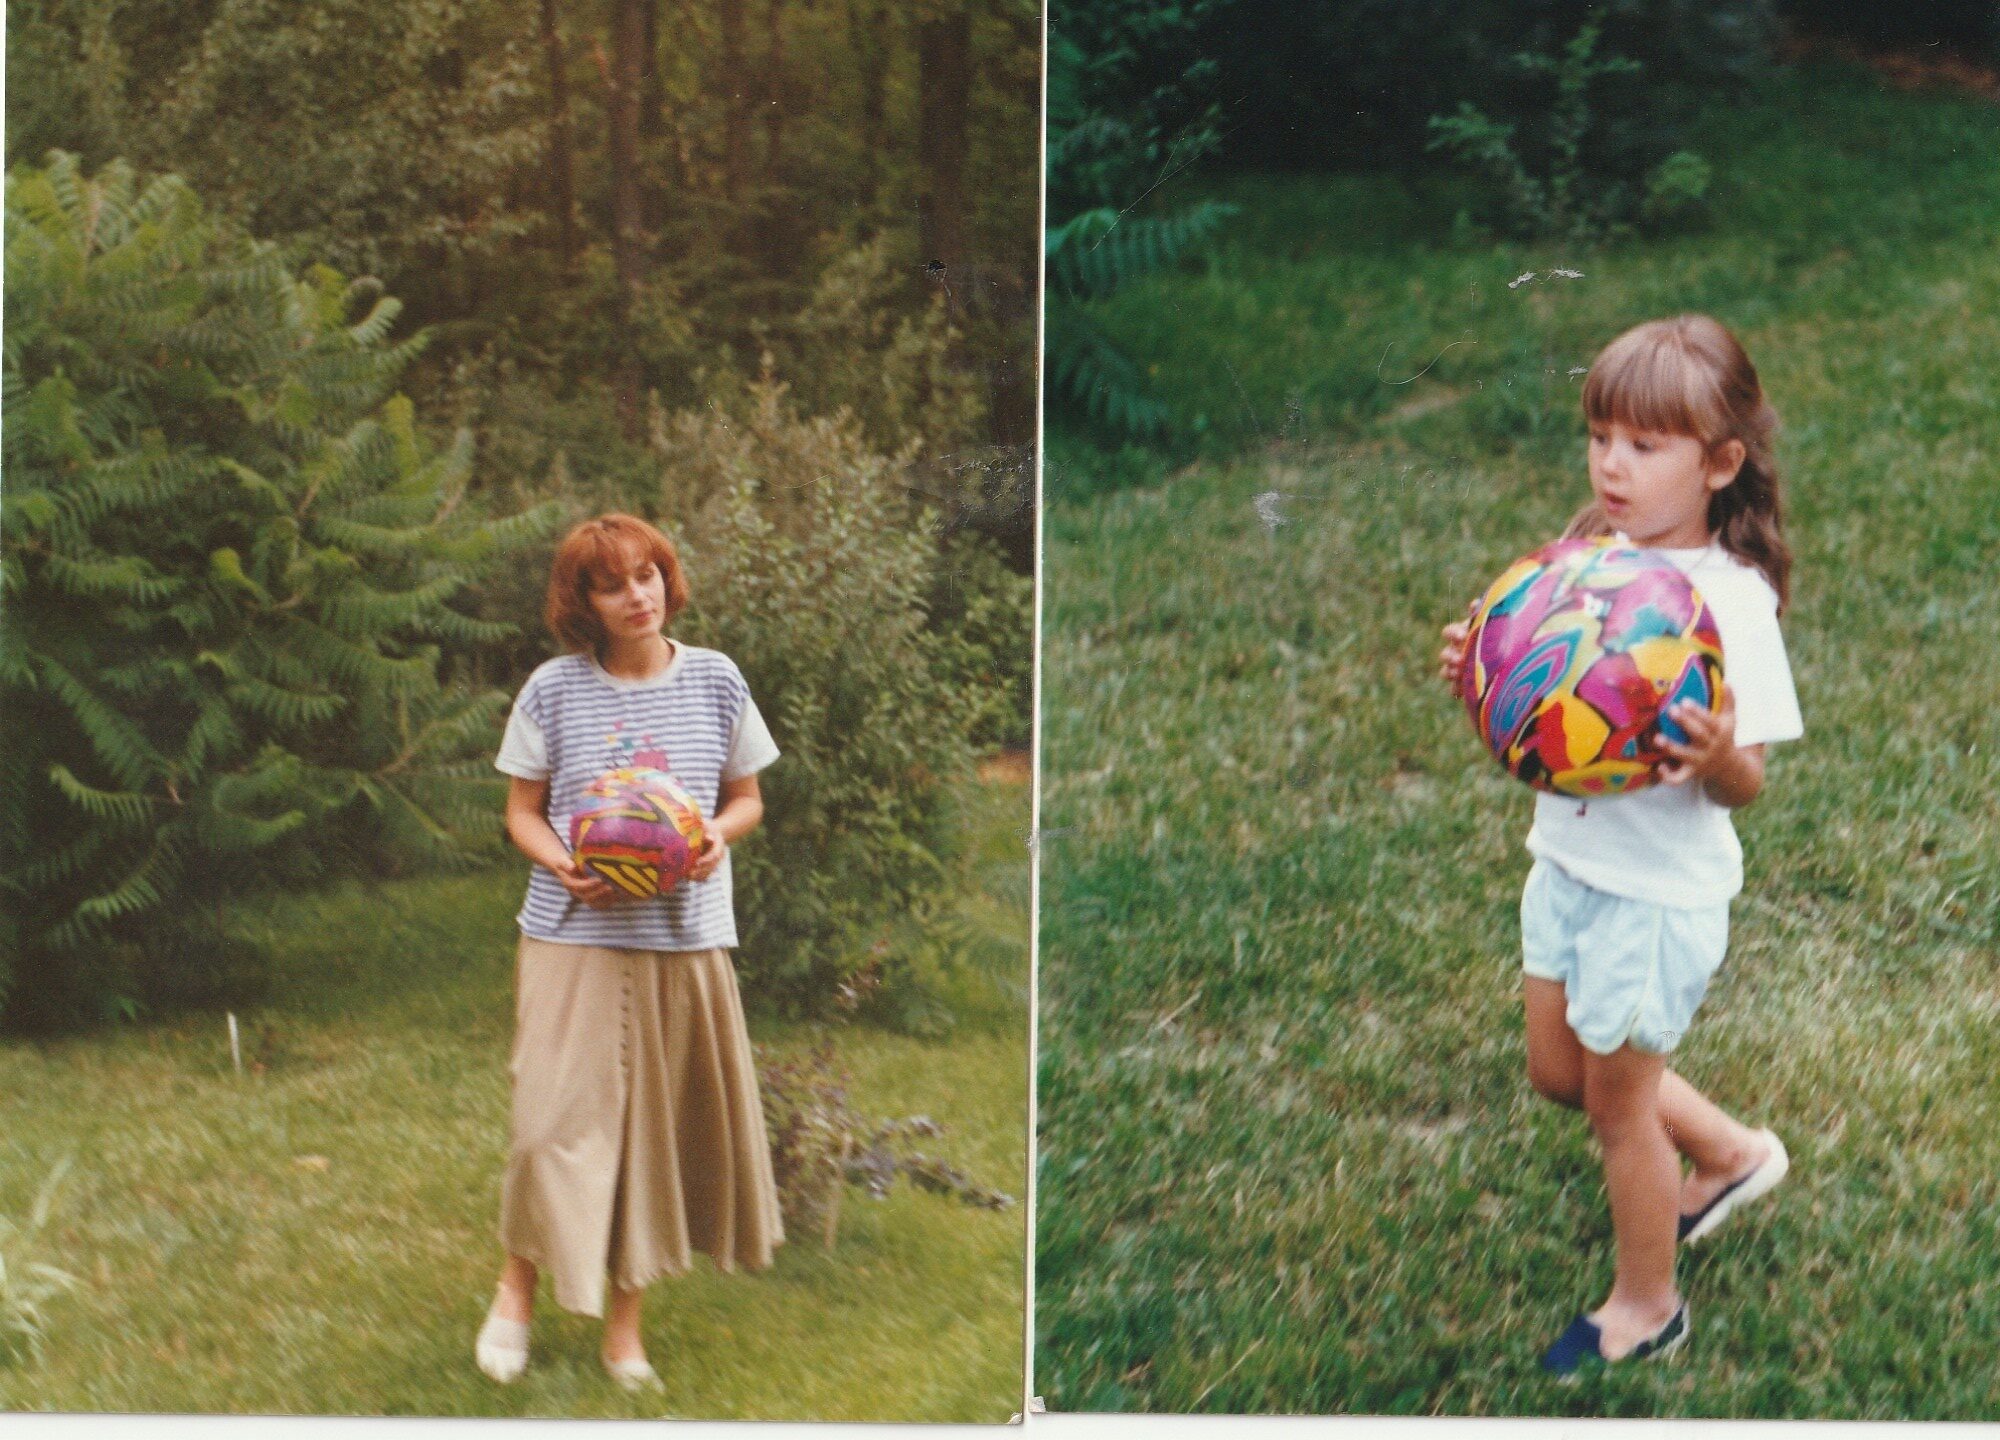 Dzień Dziecka 01.06.1996, ja i moja mama bawimy się piłką, którą dostałam w prezencie. Moja rodzina nie była majętna w tych czasach, ale pamiętam, jak radośnie i miło spędzałam czas na zabawie z mamą.